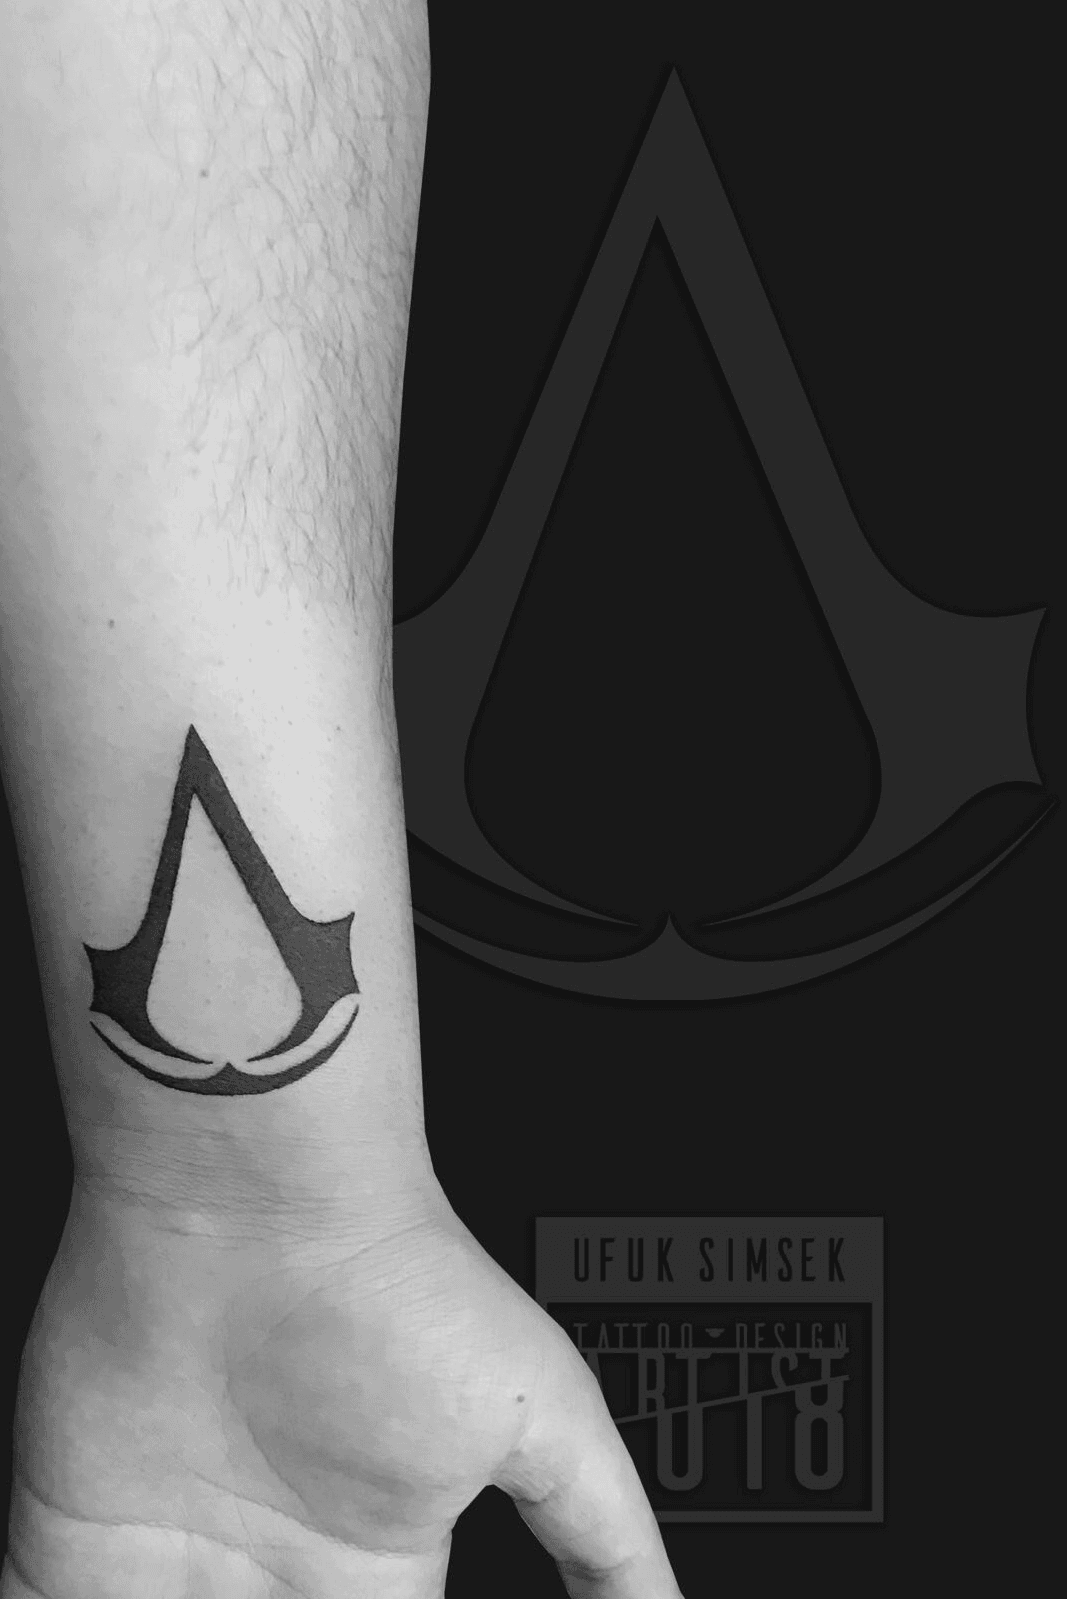 Top 53 Assassins Creed Tattoo Ideas 2021 Inspiration Guide  Assassins  creed tattoo Tattoo designs men Gaming tattoo